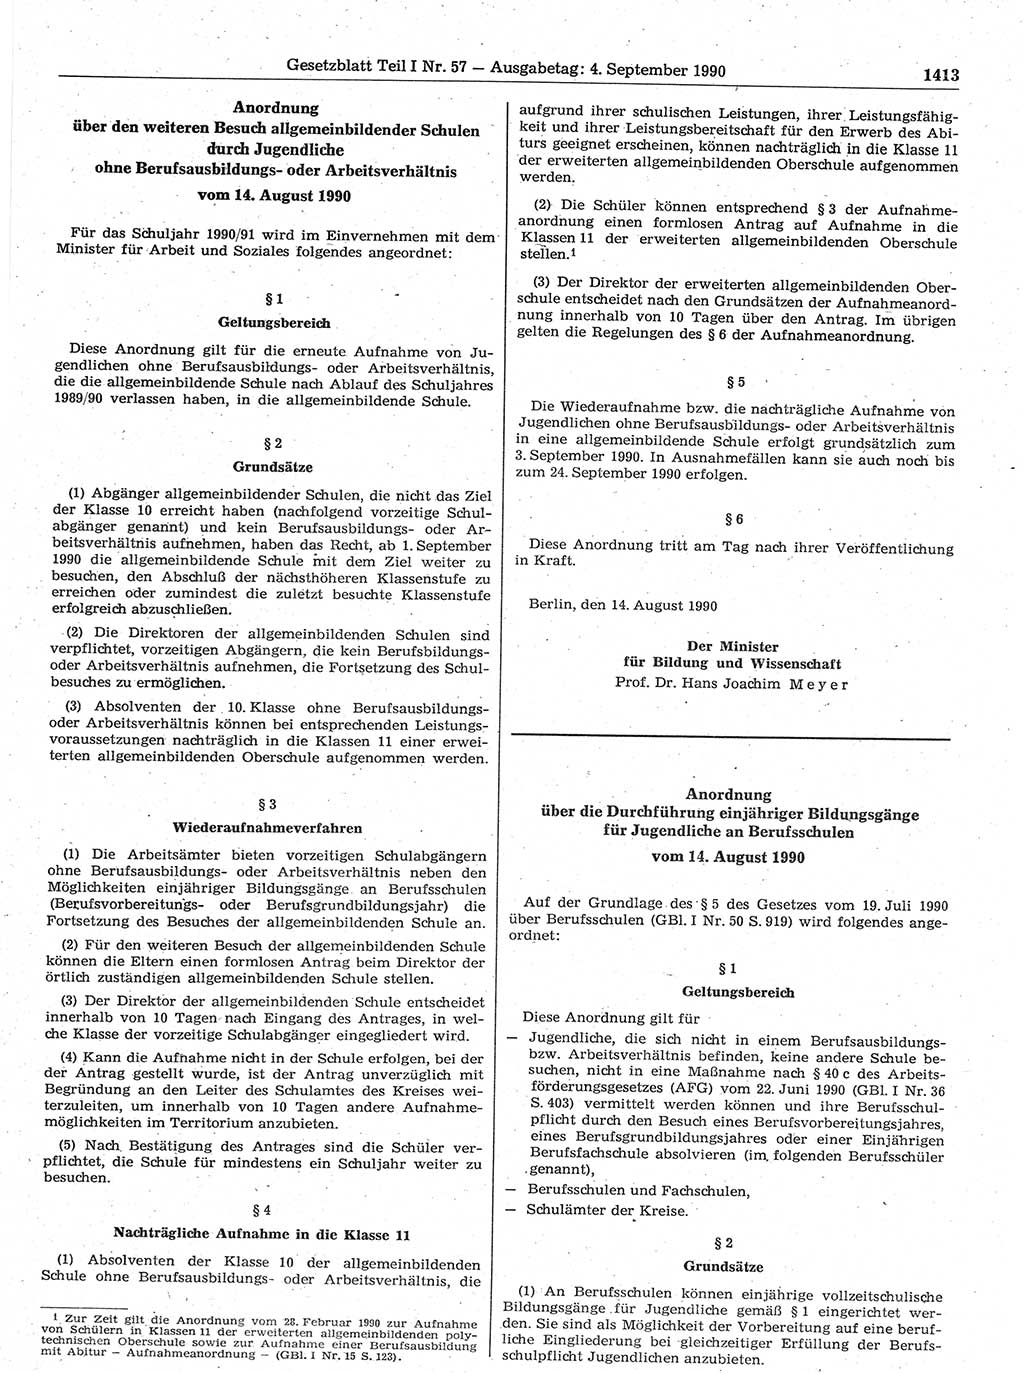 Gesetzblatt (GBl.) der Deutschen Demokratischen Republik (DDR) Teil Ⅰ 1990, Seite 1413 (GBl. DDR Ⅰ 1990, S. 1413)